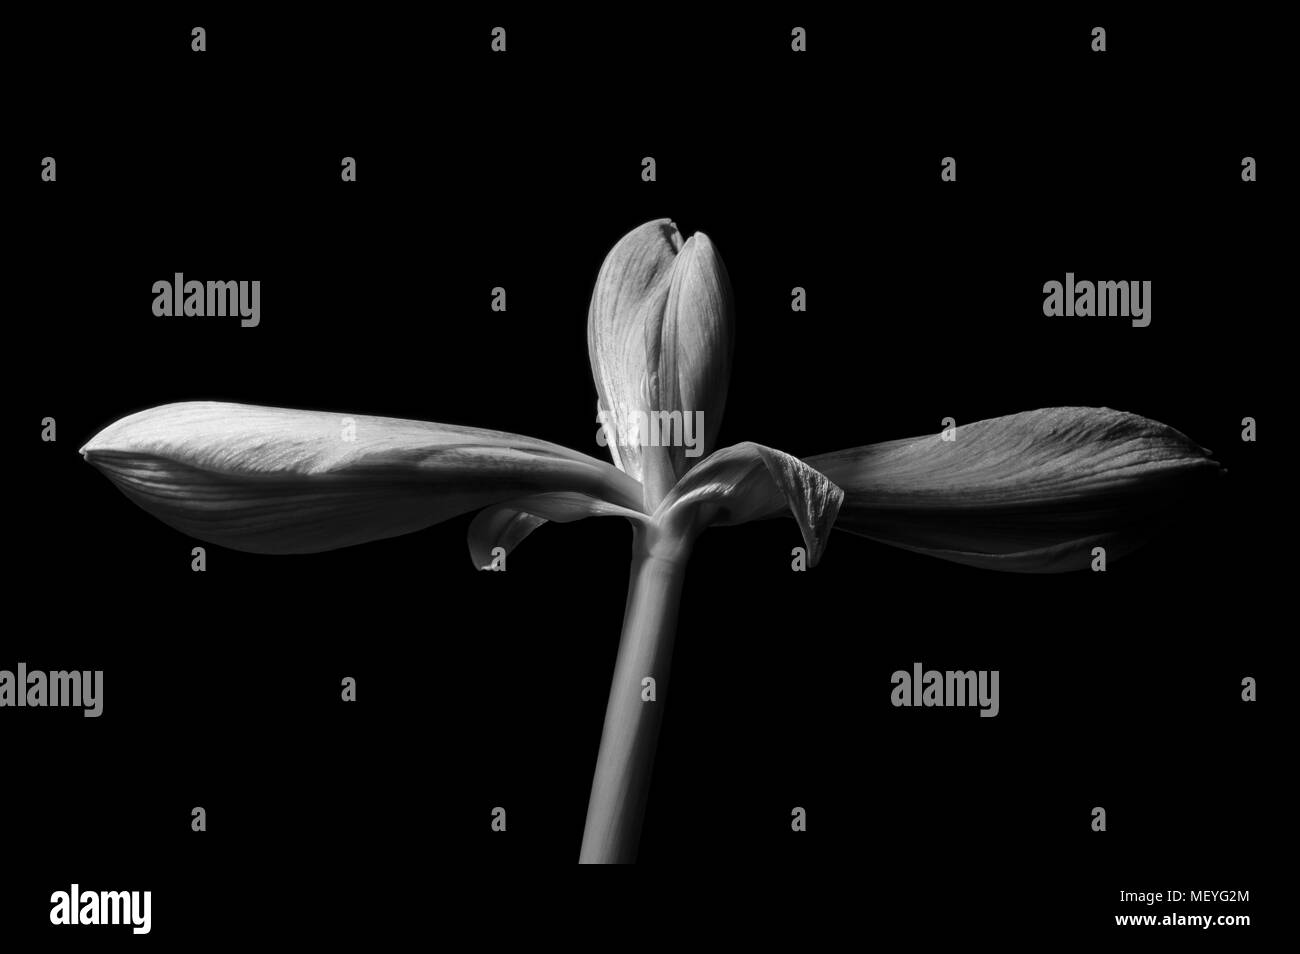 Le noir et blanc trois fleurs d'Amaryllis immatures sur une seule tige, deux fleurs latérales, l'une verticale, pleine fleur fond noir Banque D'Images